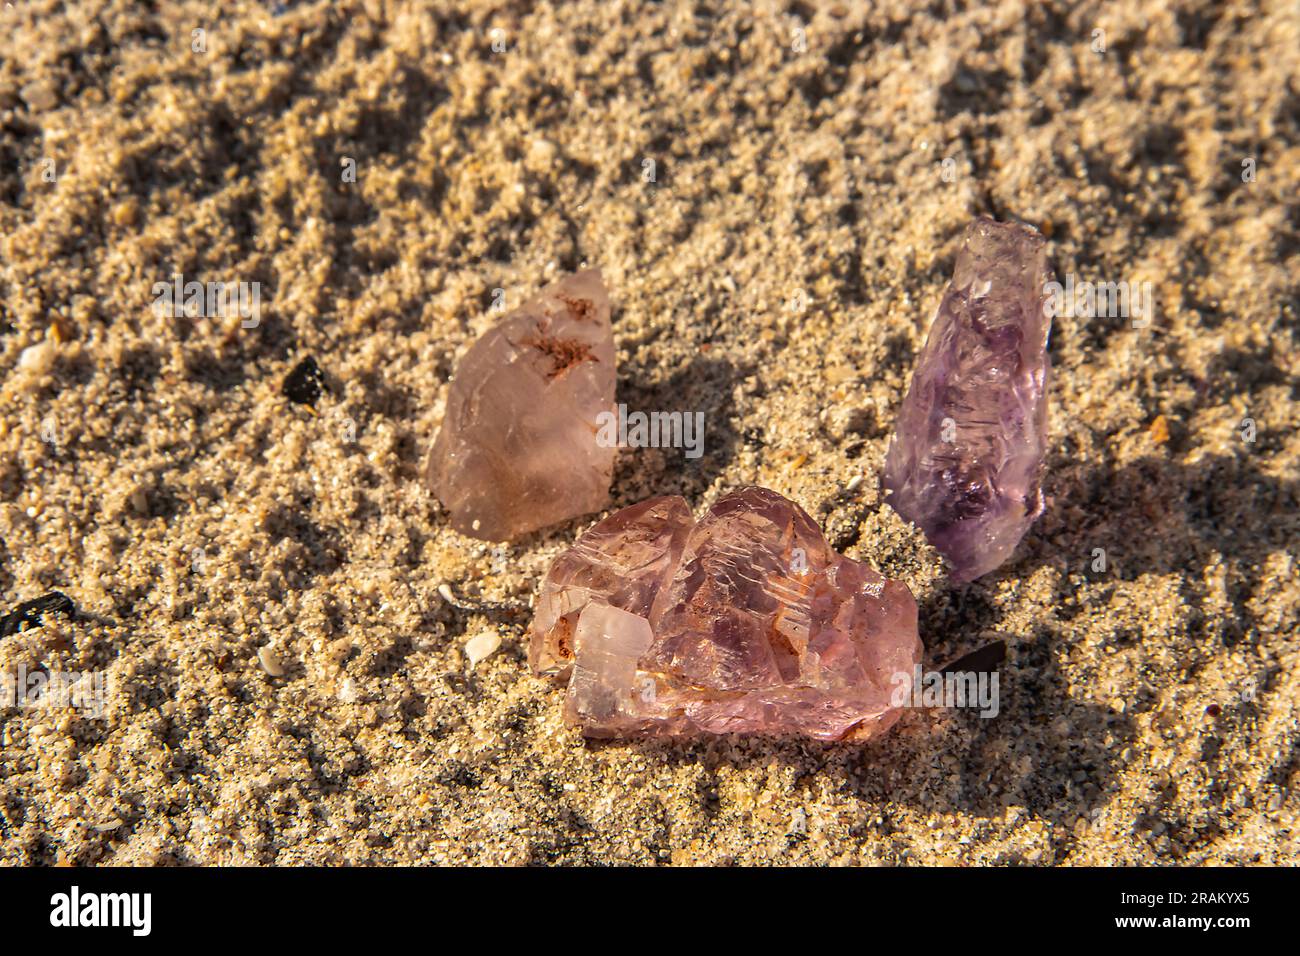 L'améthyste rose, dans son état naturel, non poli, révèle des teintes roses douces avec une clarté translucide, extraites au Mozambique Banque D'Images